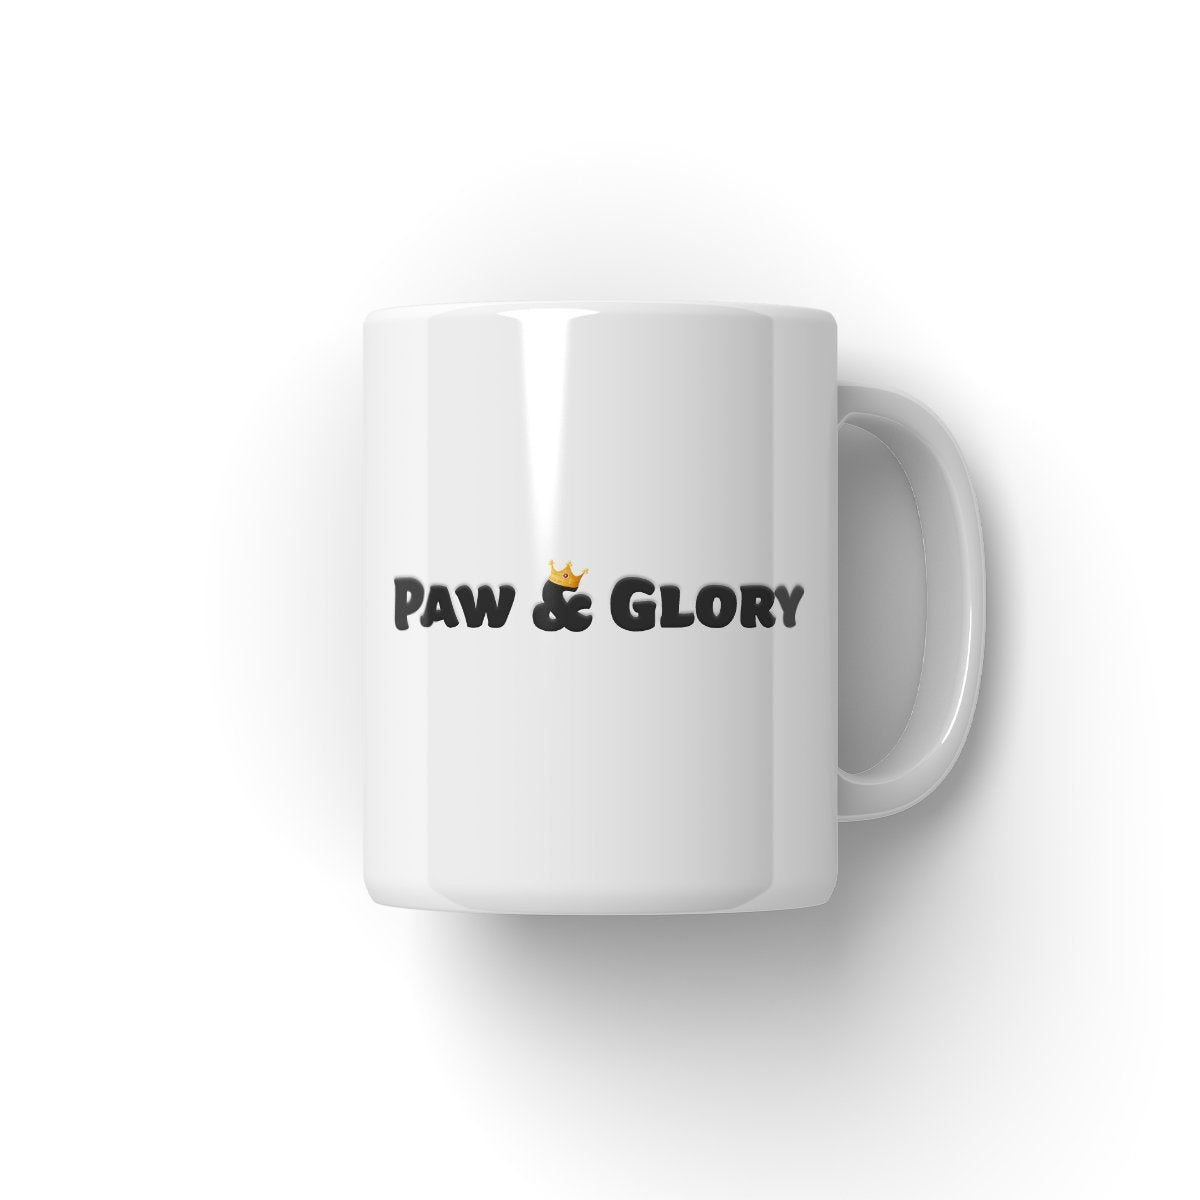 puppy coffee mugs, personalized dog mugs, victorian cat coffee mugs, coffee mugs with dogs picture, coffee mug with dogs personalised mugs dog, paw and glory, pawandglory